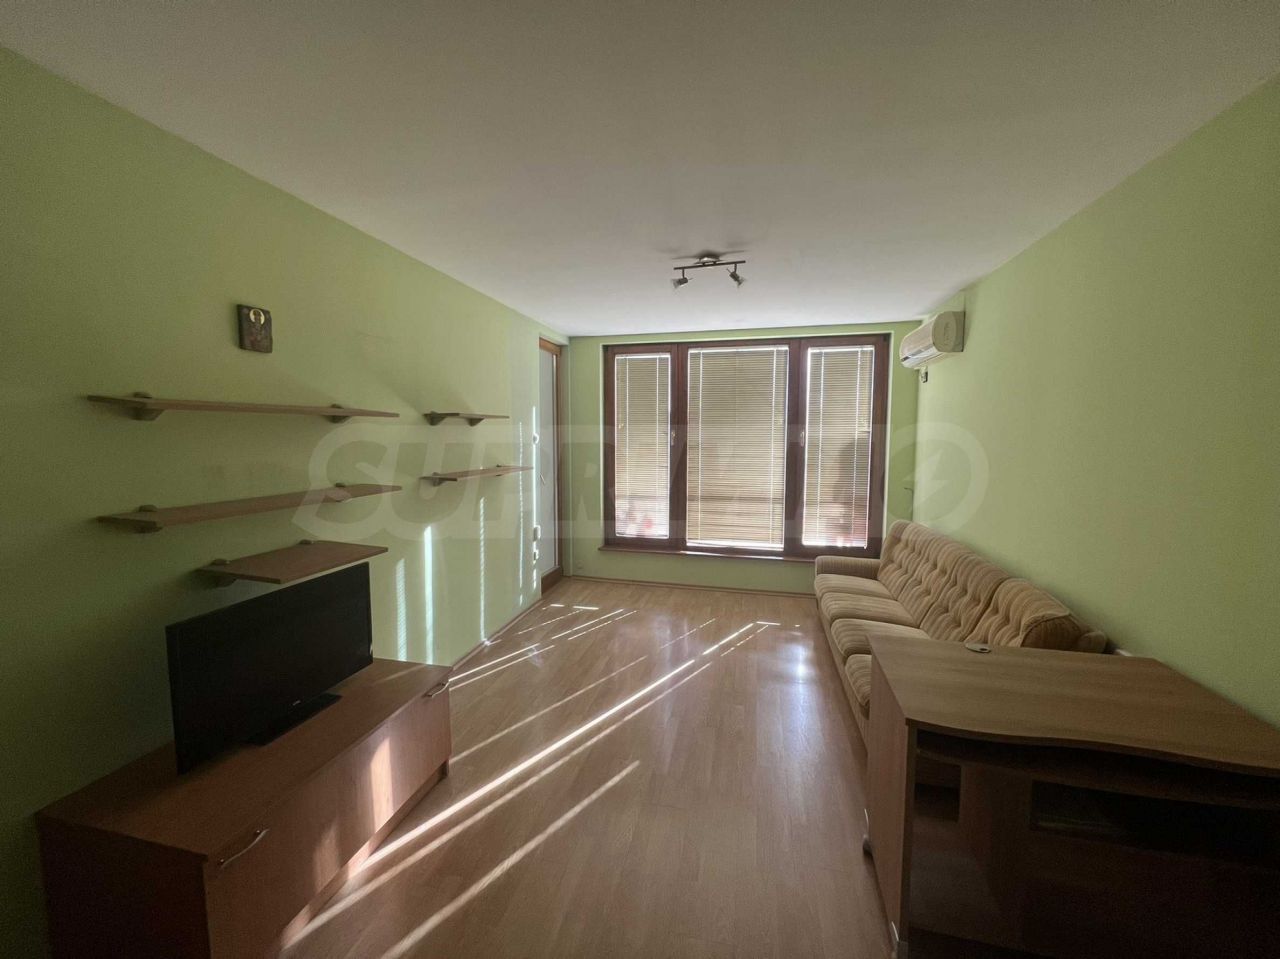 Apartment in Ruse, Bulgaria, 85 sq.m - picture 1